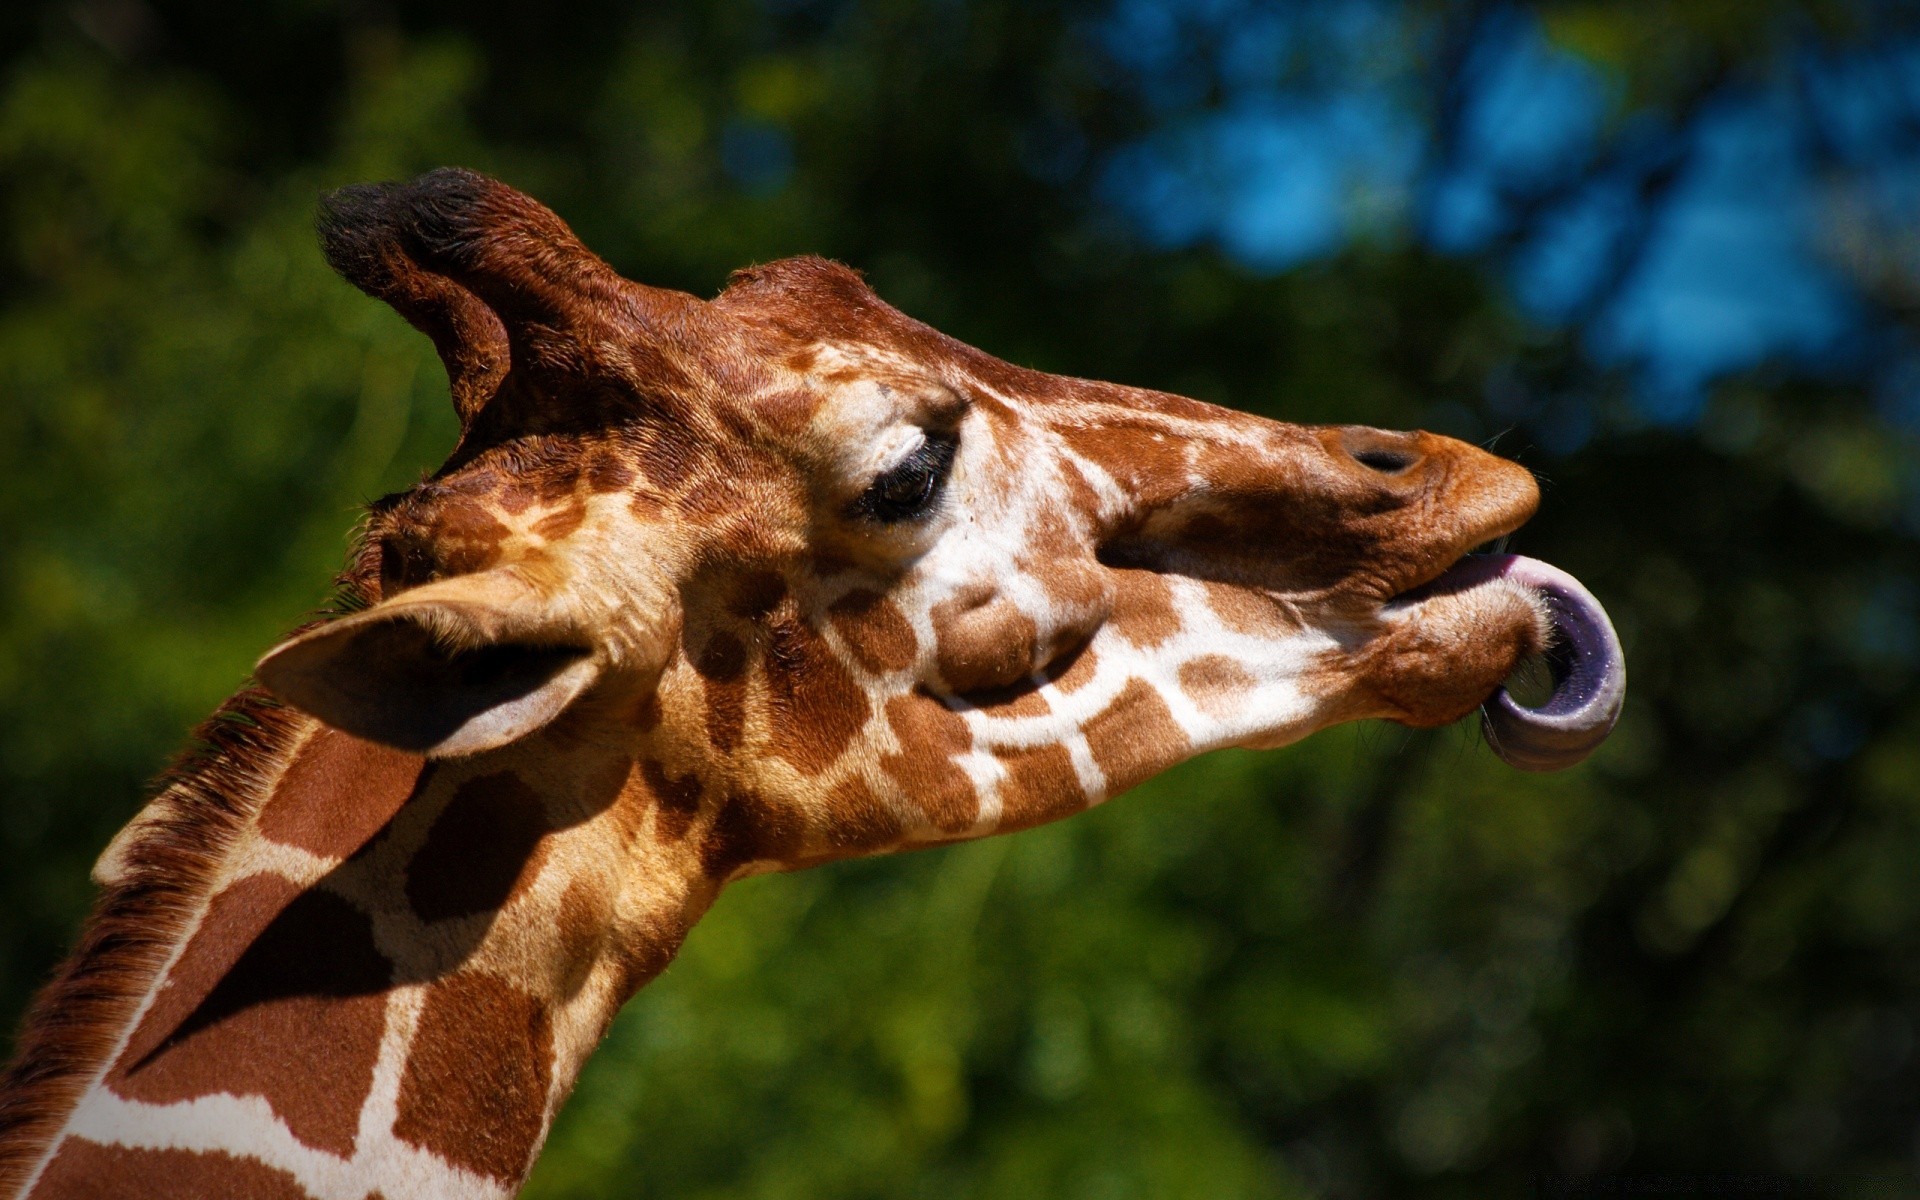 животные природа дикой природы животное жираф дикий млекопитающее портрет зоопарк парк глава большой на открытом воздухе среды один красивые шея милые тропический сафари